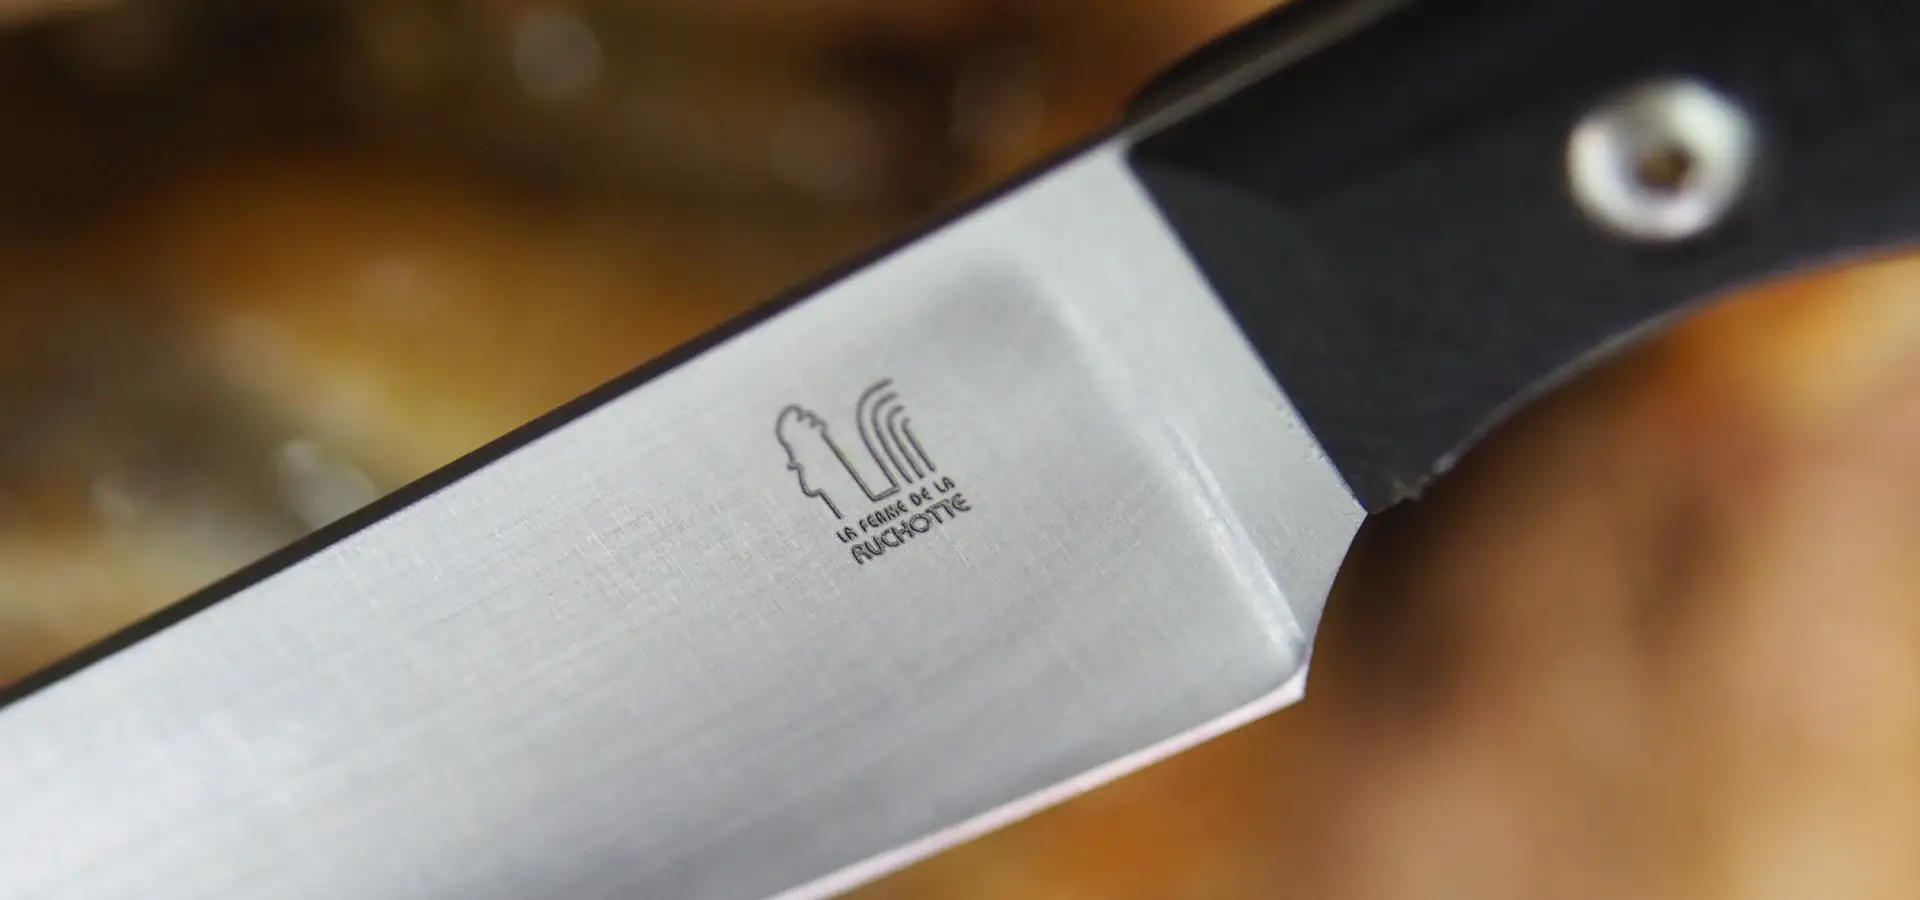 Couteau La Ruchotte, un couteau étudié et conçu pour la découpe